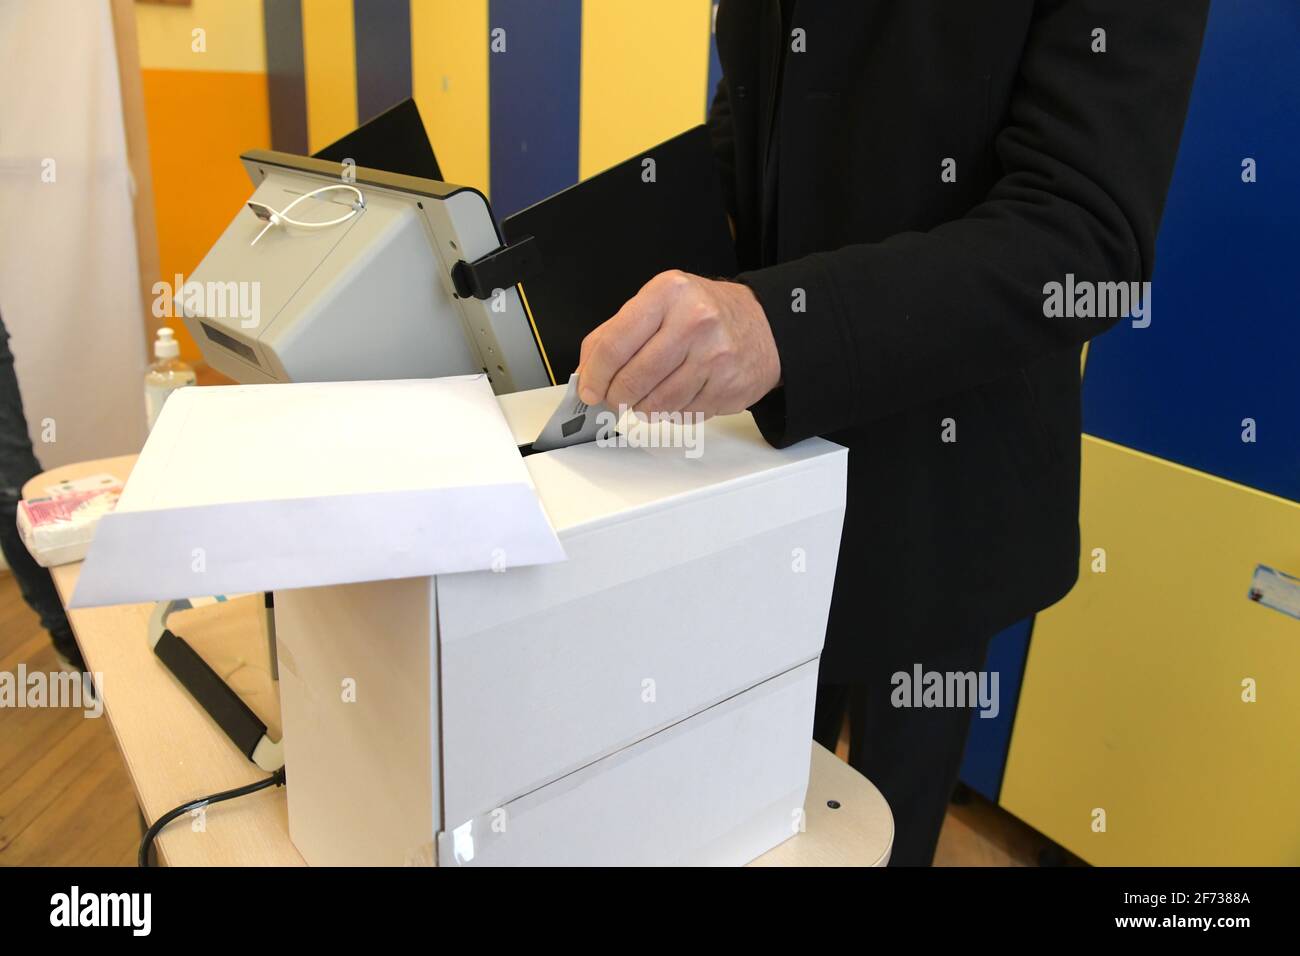 Sofia, Bulgarie - Apr 4 2021: Gros plan d'une femme mettant sa carte de vote dans une boîte après avoir voté électroniquement Banque D'Images